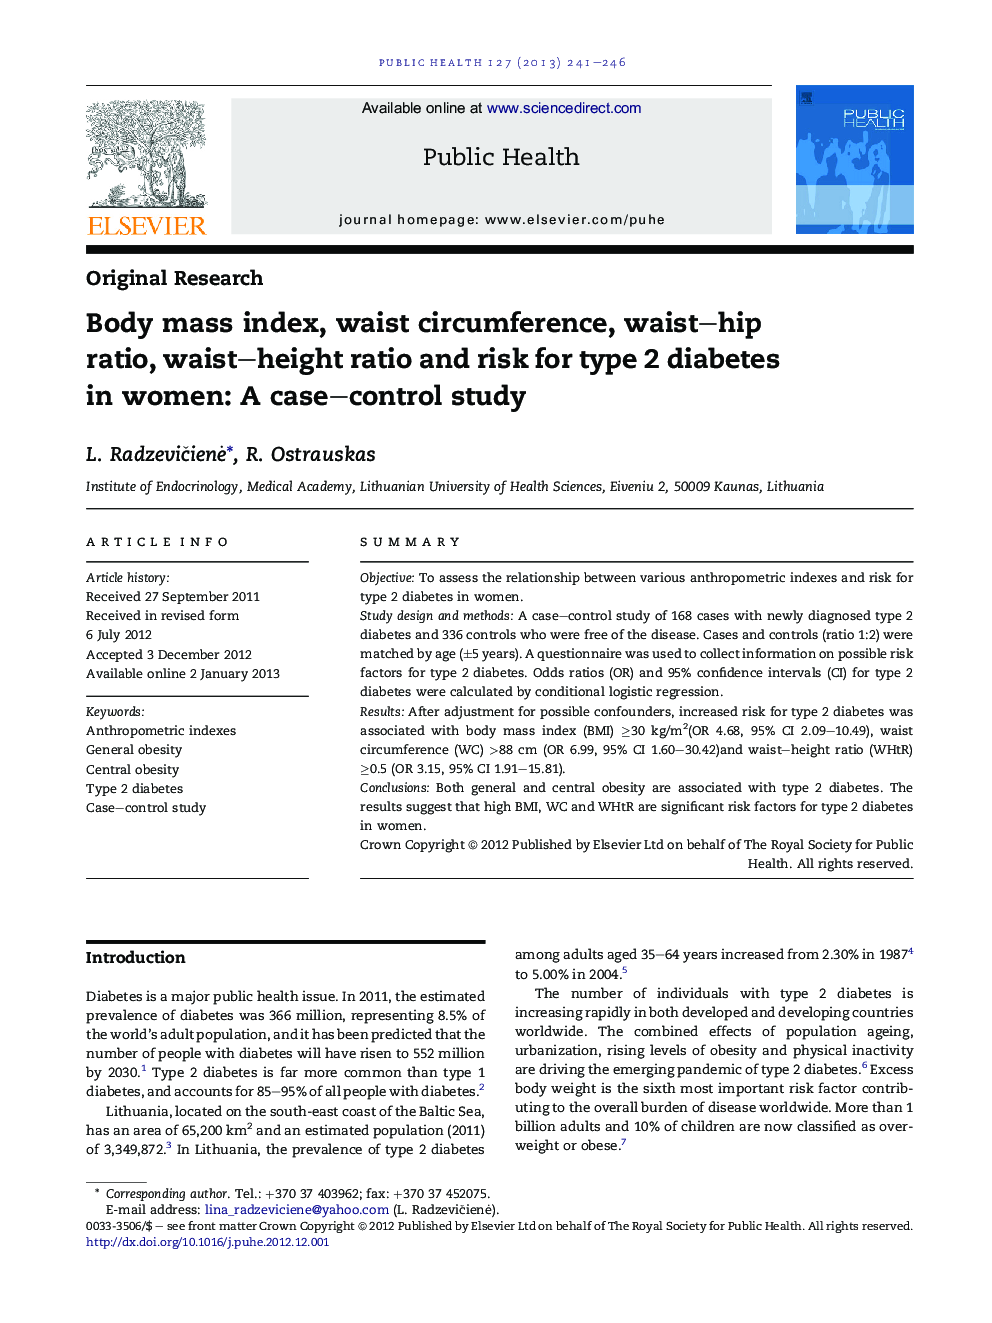 شاخص توده بدن، دور کمر، نسبت دور کمر، نسبت دور کمر و ریسک ابتلا به دیابت نوع 2 در زنان: یک مطالعه مورد شاهدی 